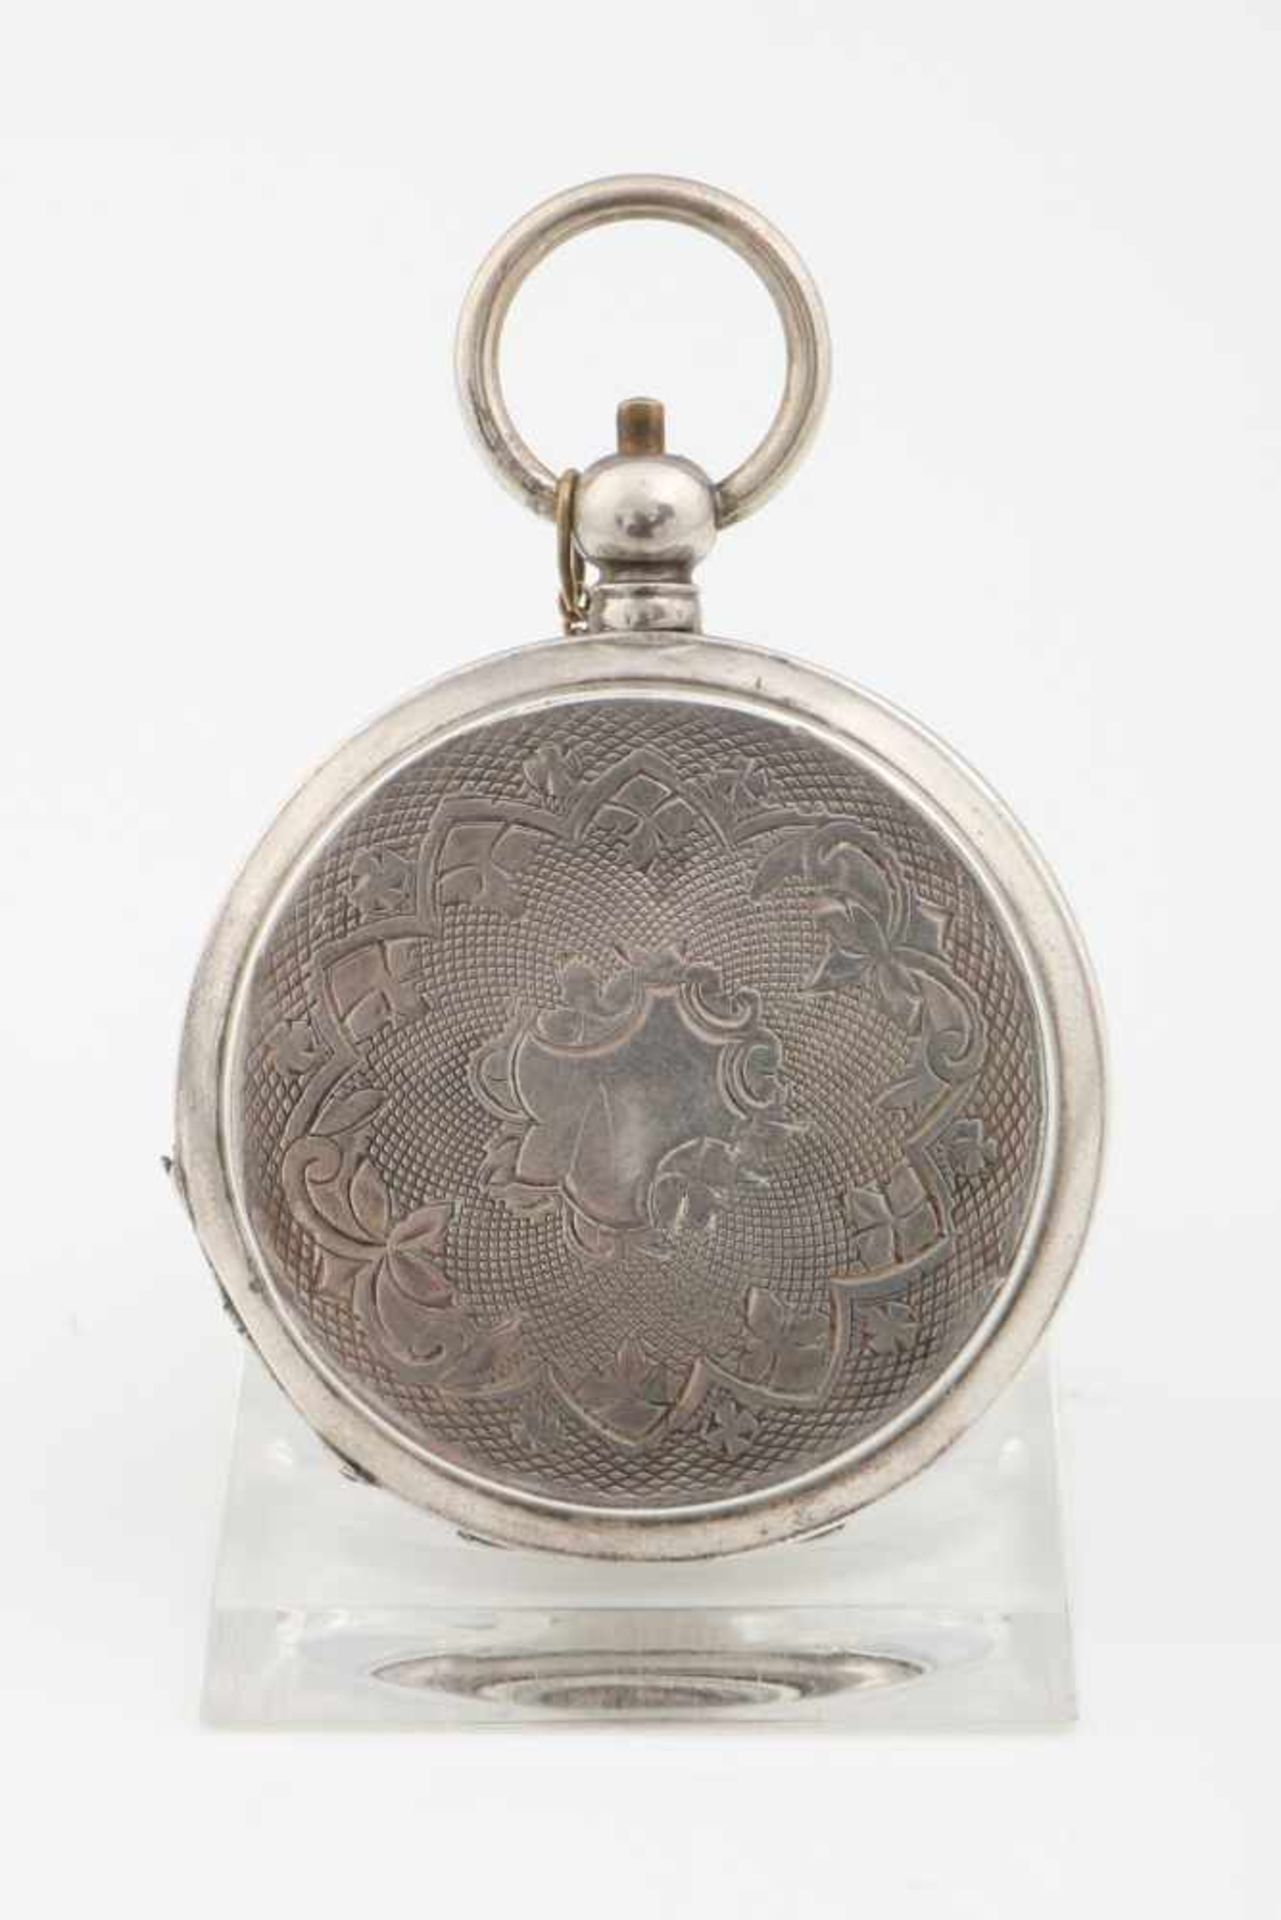 Russische Taschenuhr mit Bildnis Zar Nikolas II. Savonette-Gehäuse, Silber (875), auf dem - Bild 3 aus 3